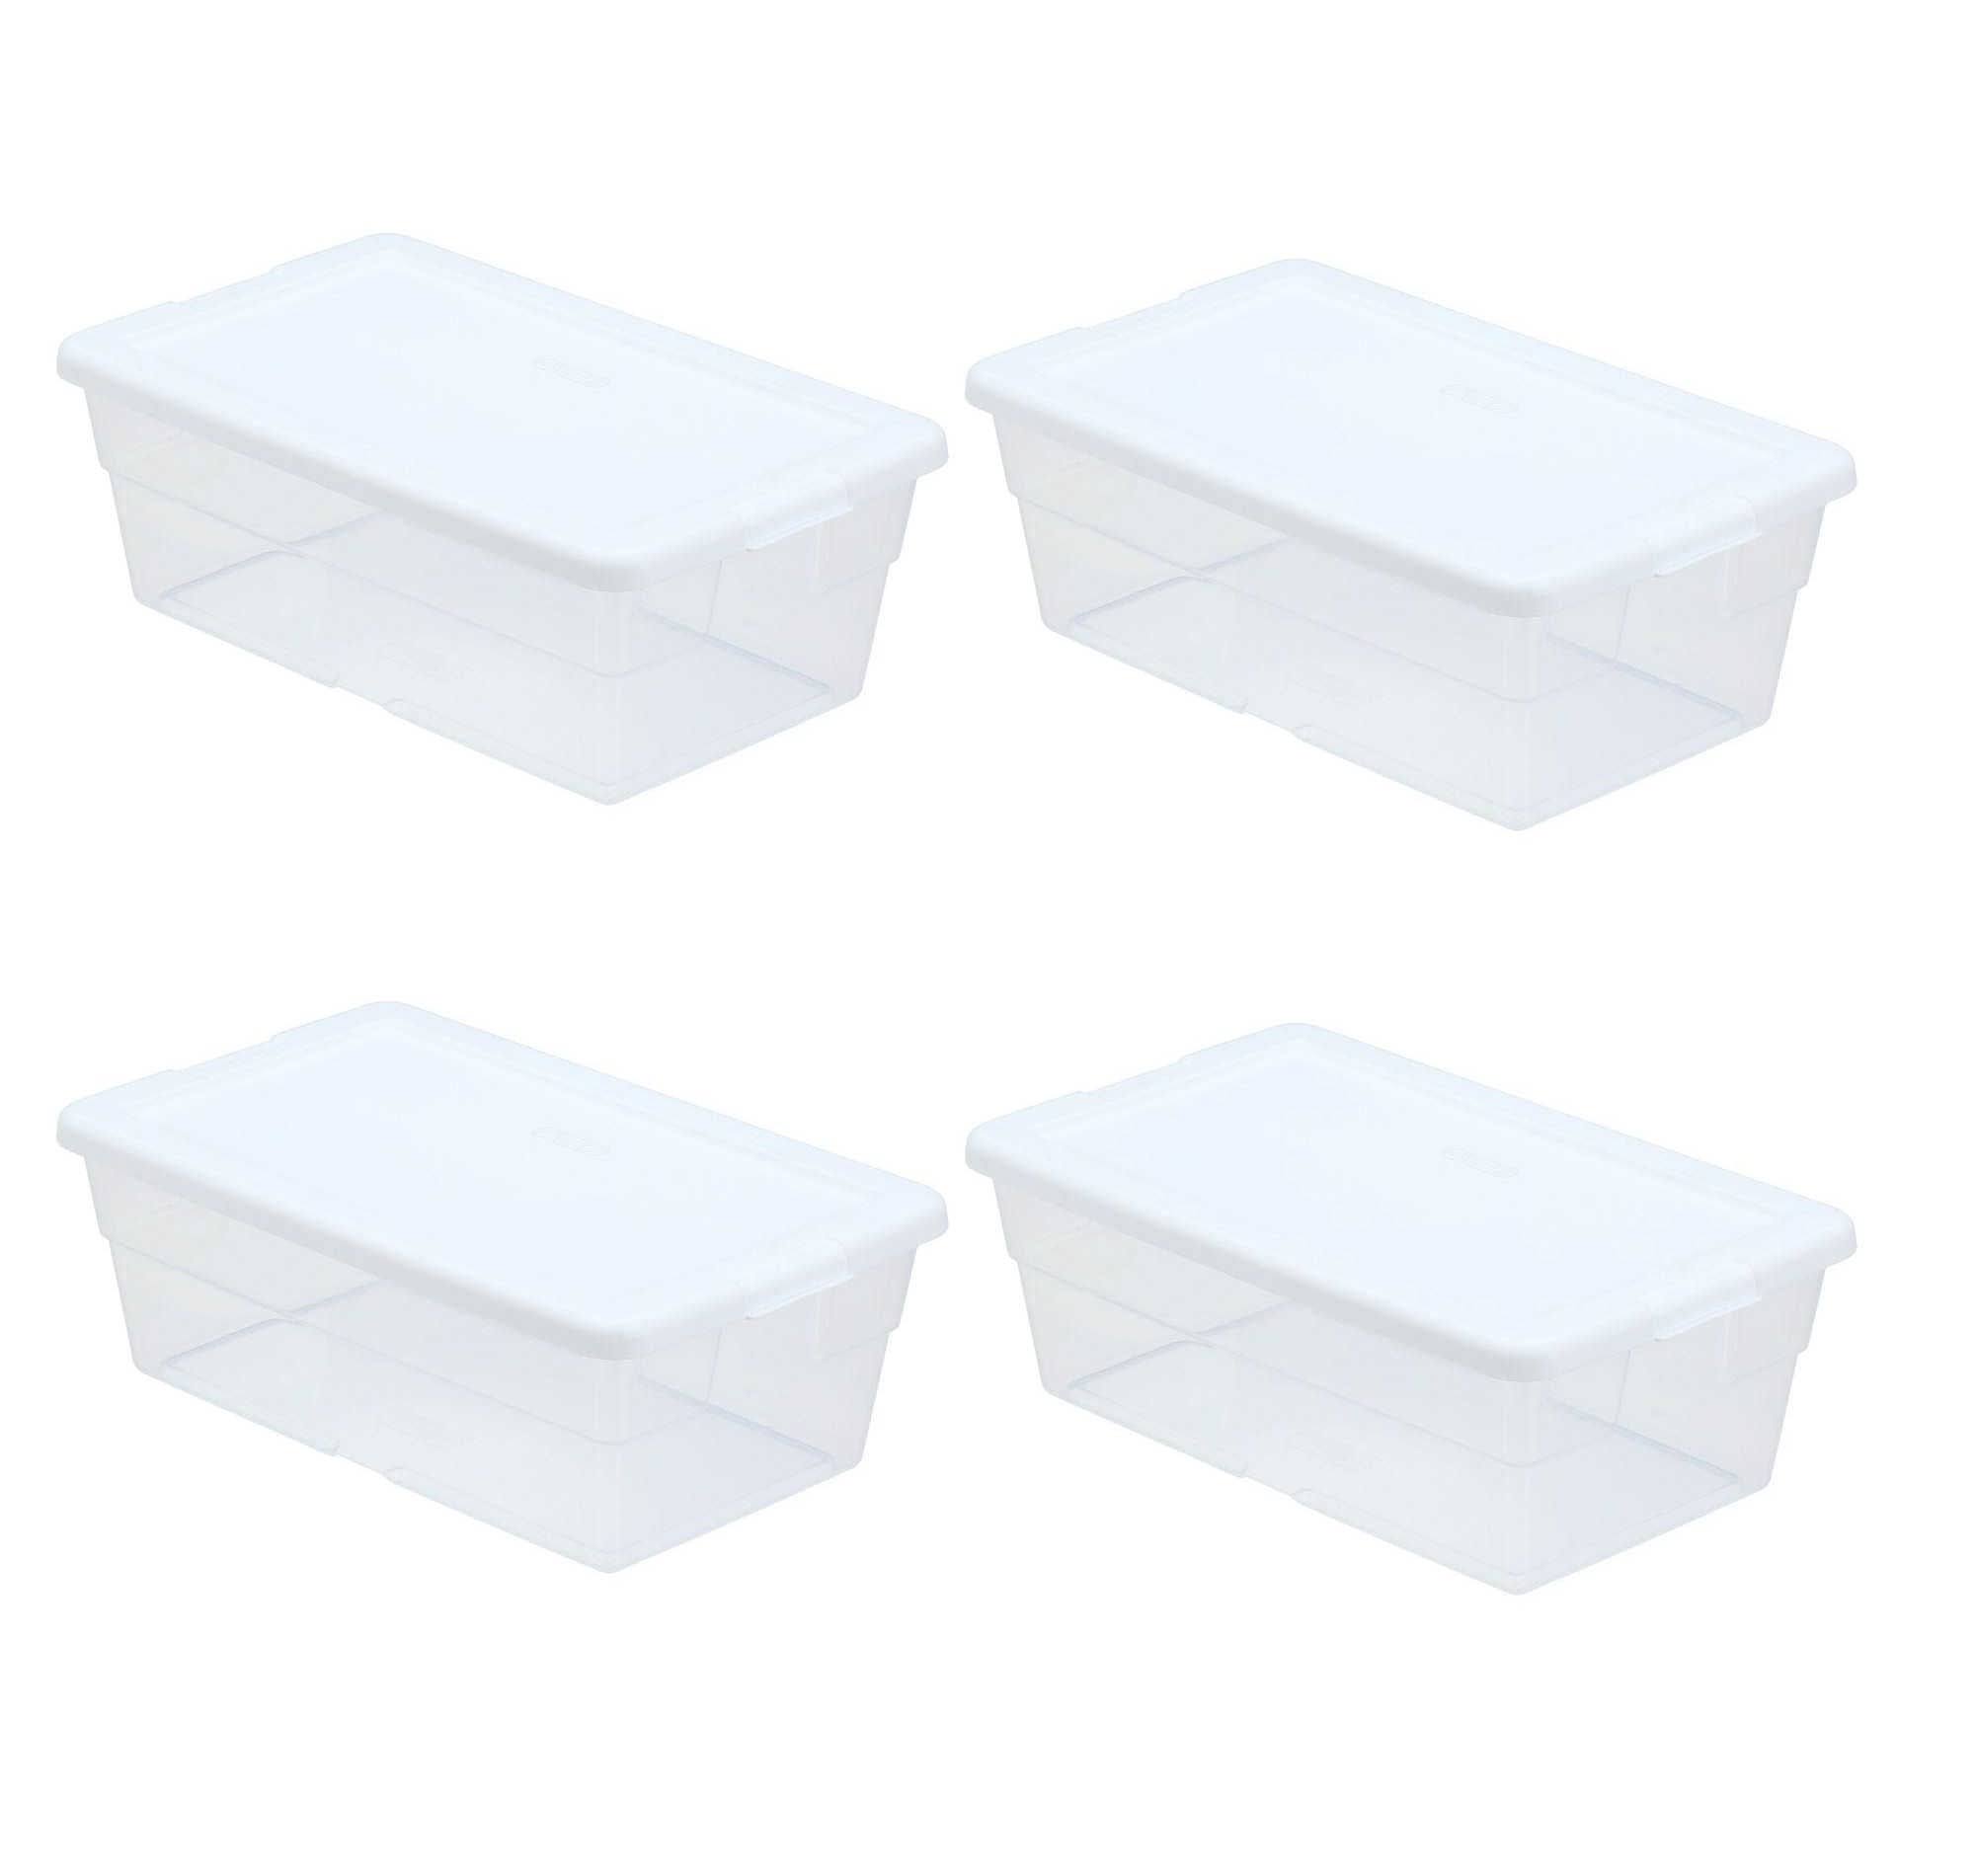 Sterilite Storage Container - White